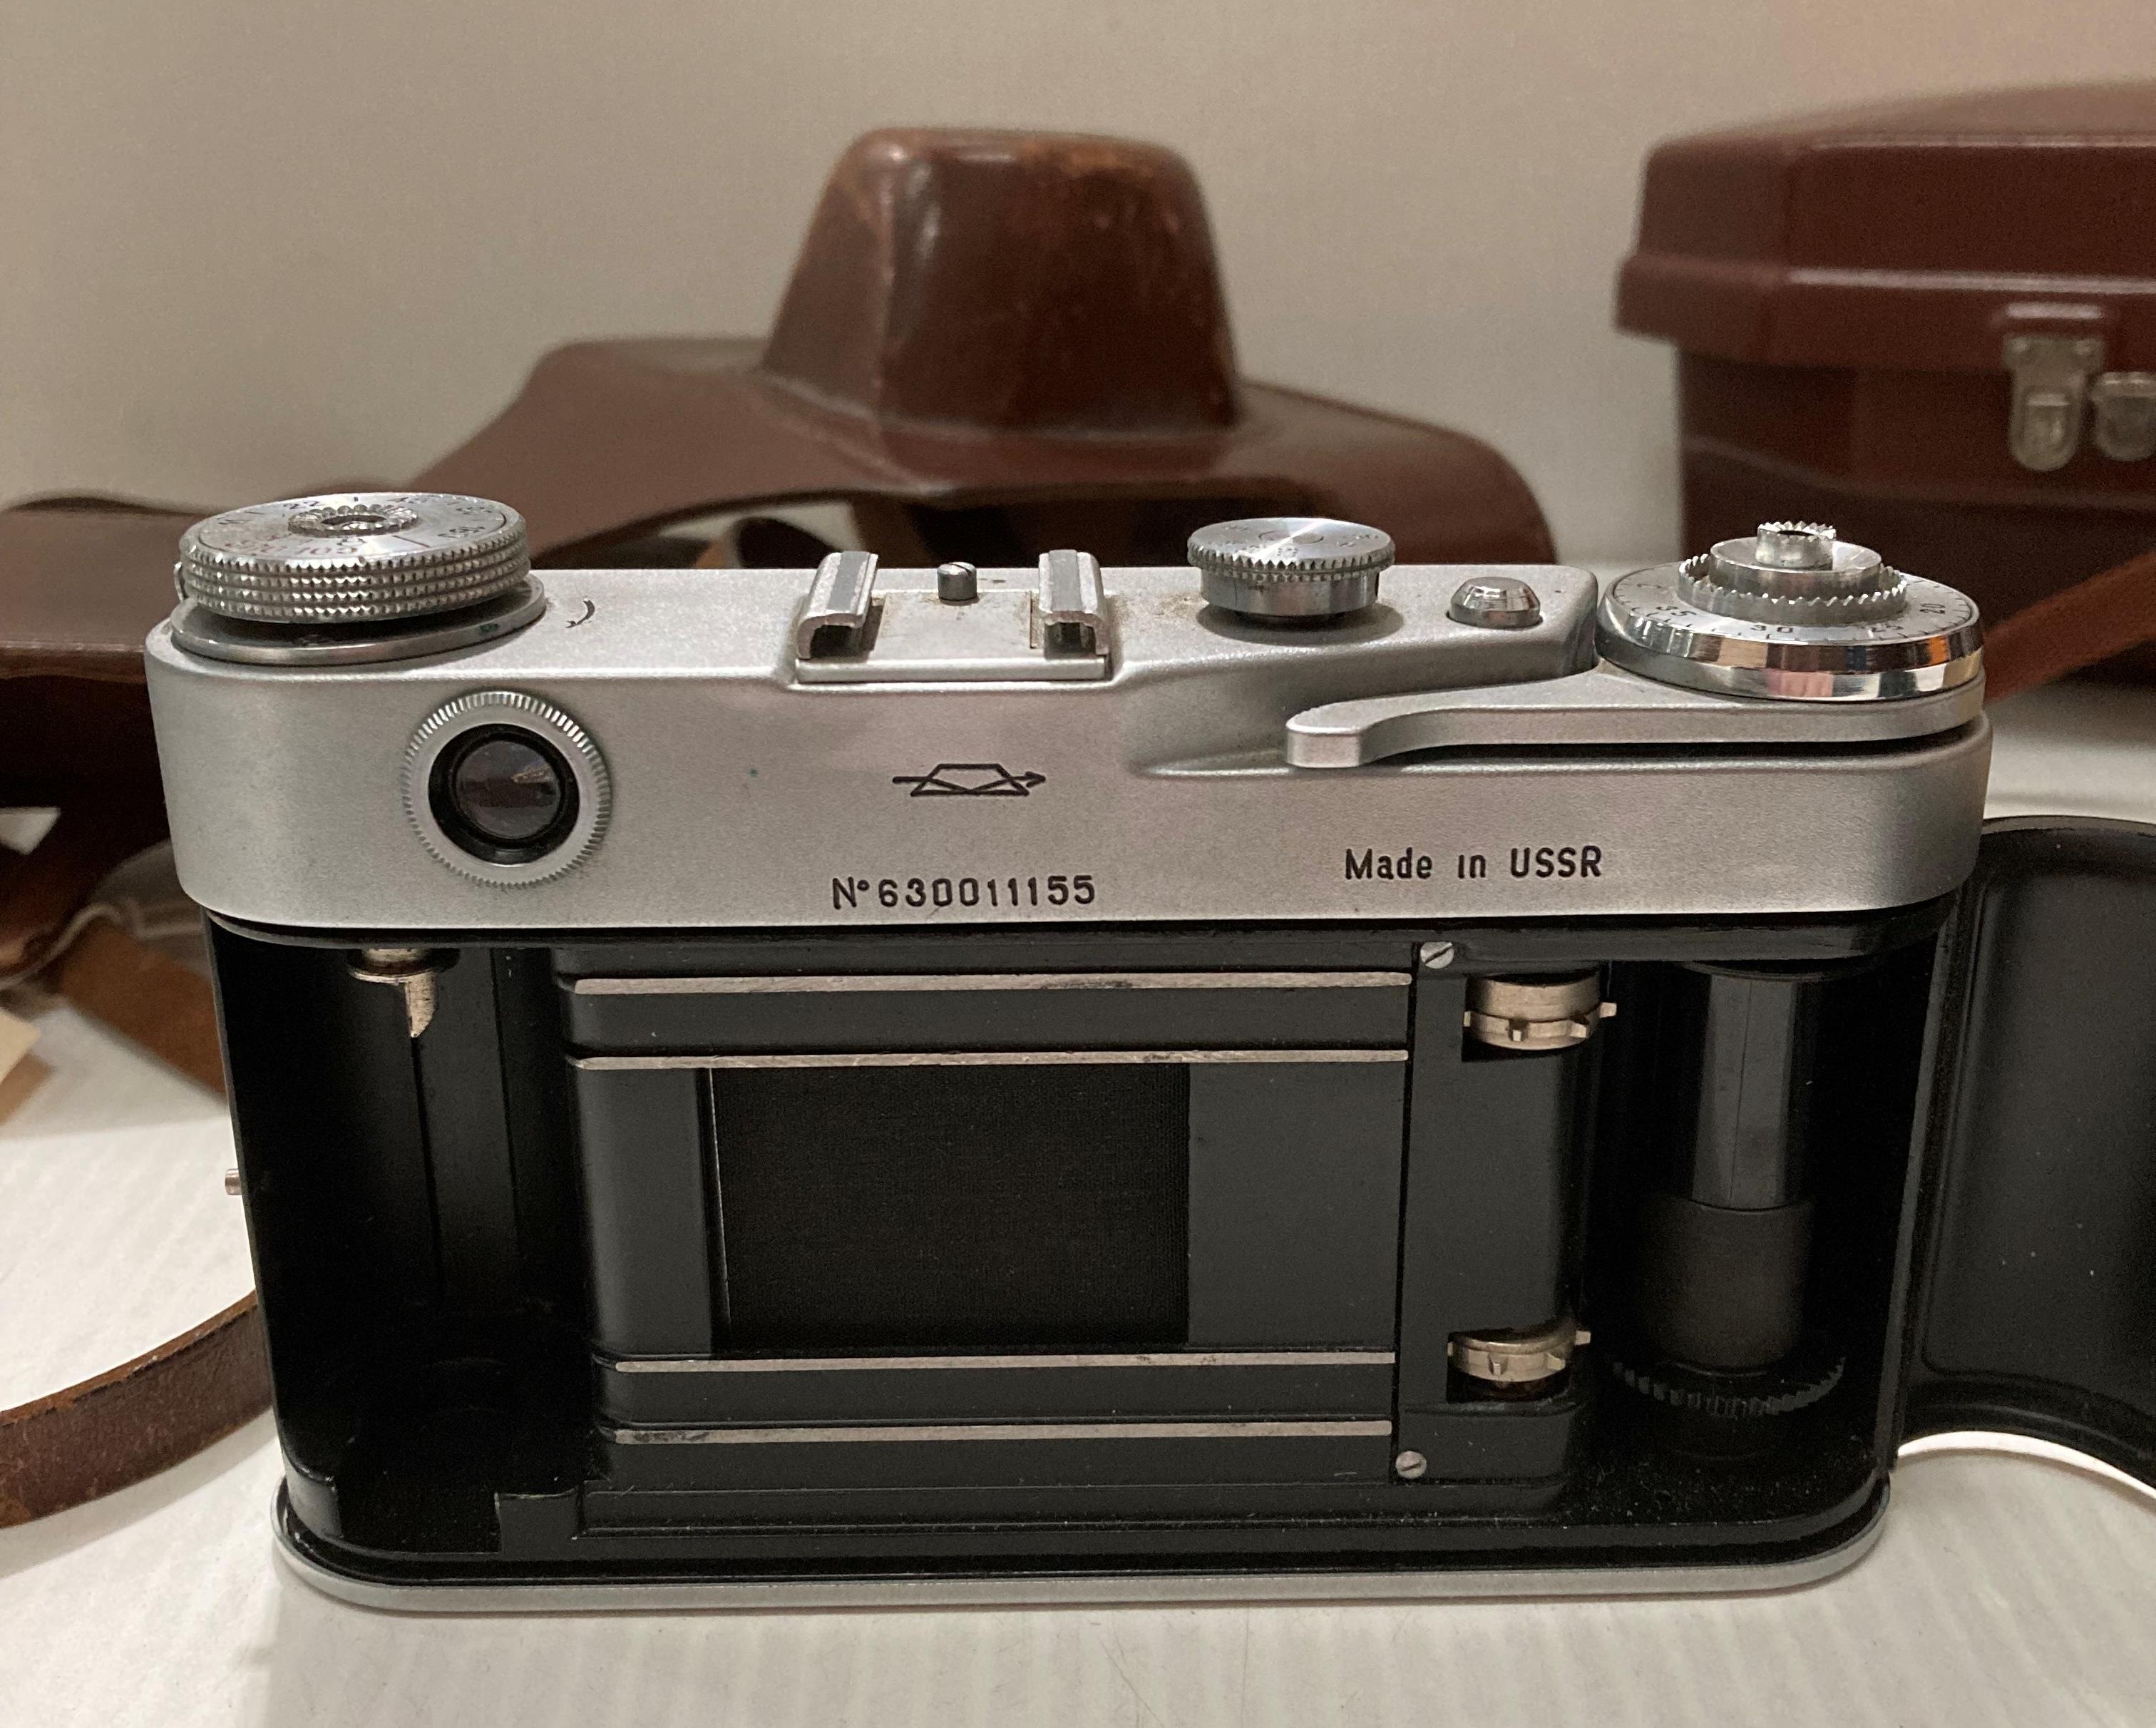 A Kodak Spool camera model 300m reflex F 1.6 in case, a 'Bolco' condenser lens and a Zorki 6 F 3. - Image 10 of 10